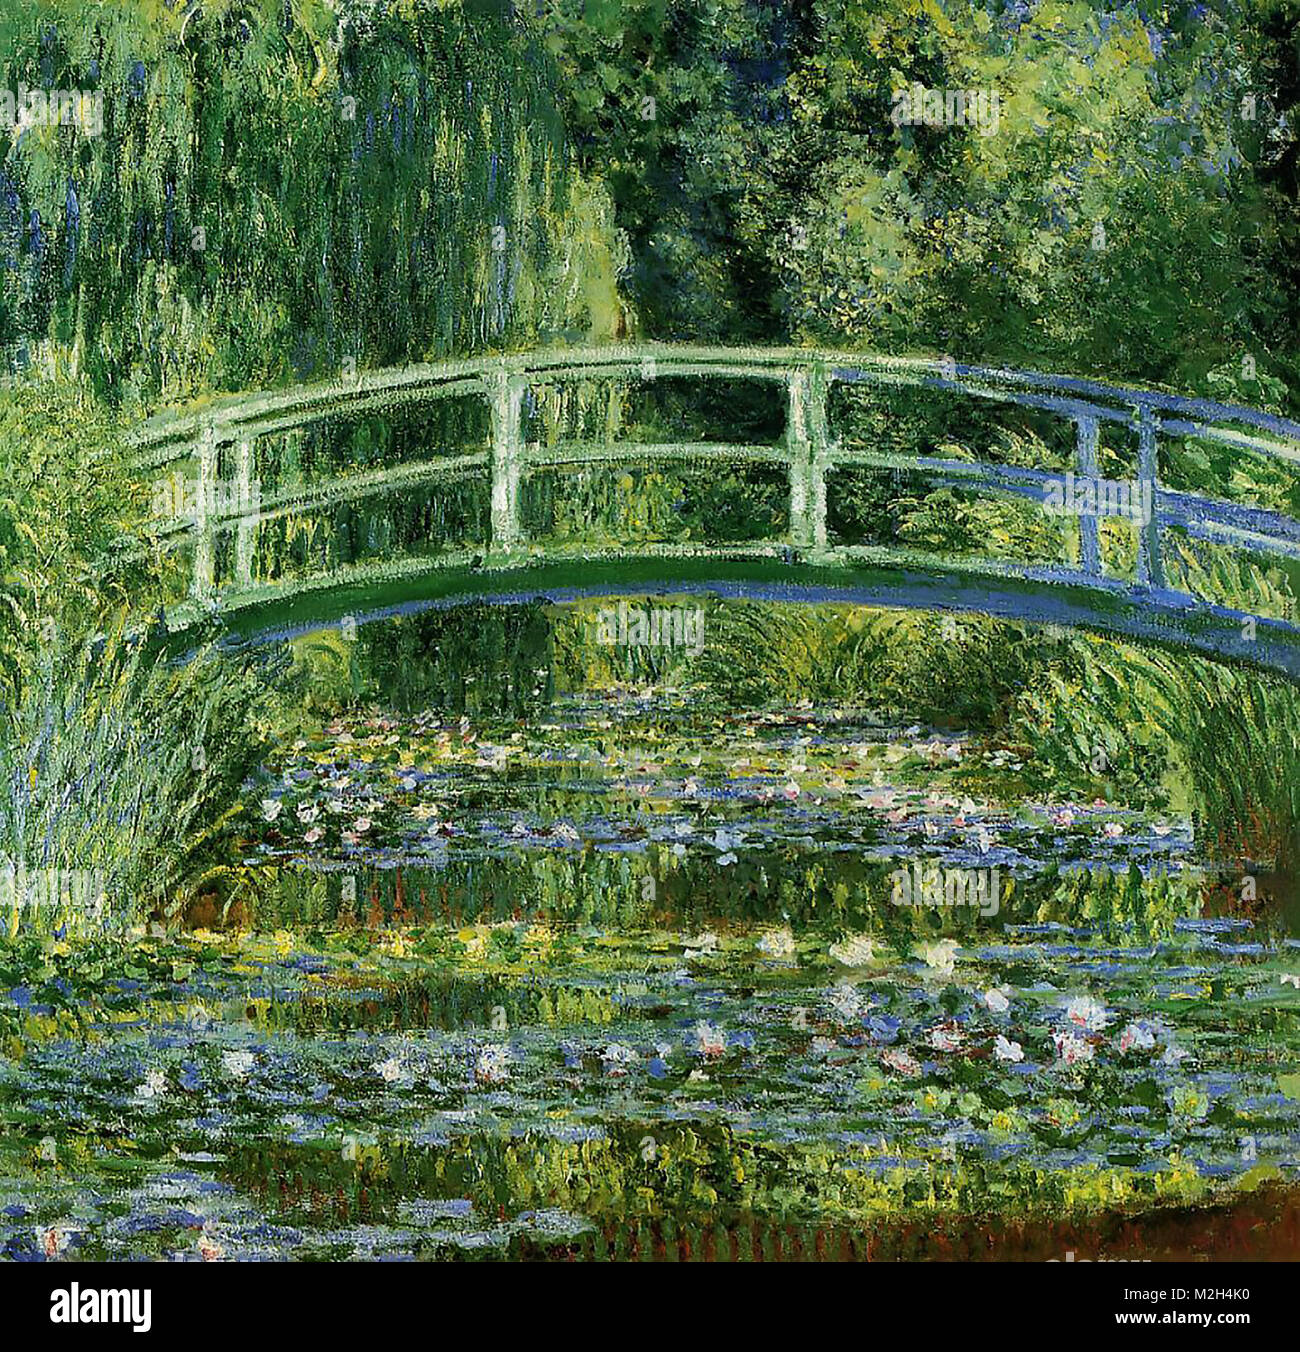 CLAUDE MONET (1840-1926) francese pittore impressionista. Il suo 'Ninfee e il ponte giapponese' dipinta 1897-1899 Foto Stock